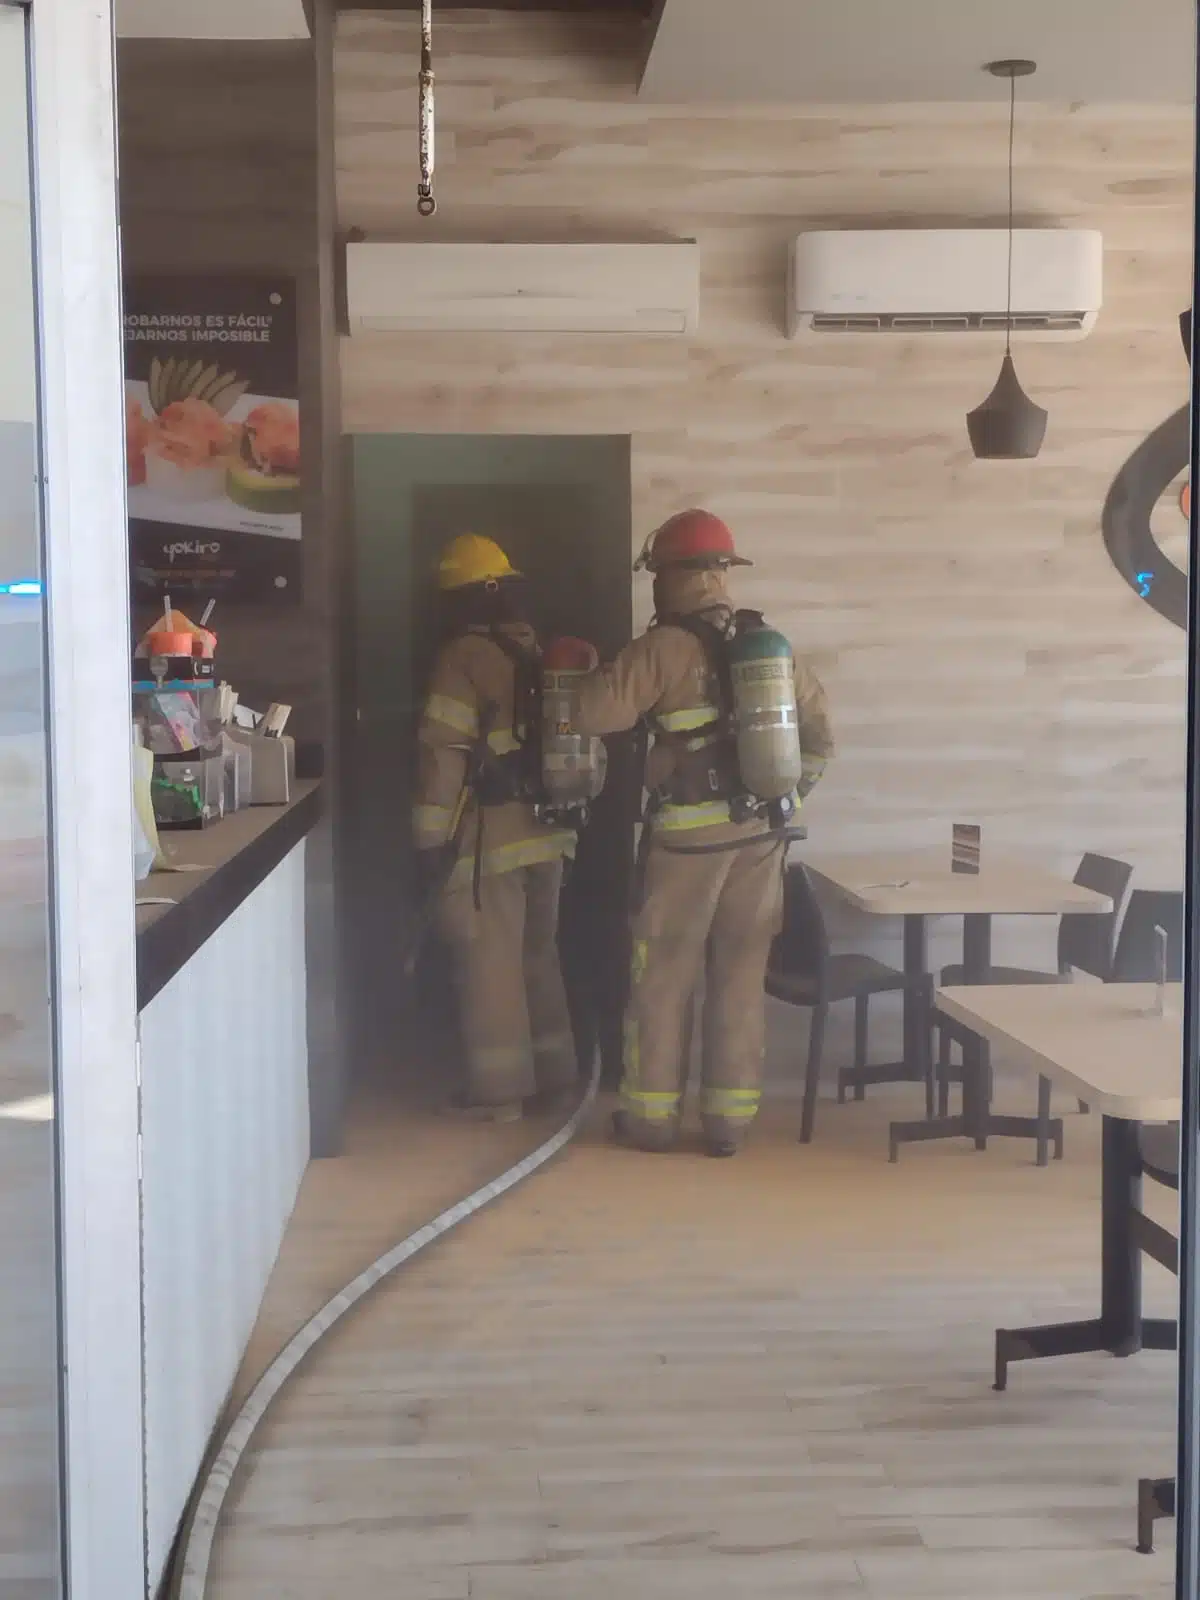 ¡Movilización! Causa alerta un connato de incendio en restaurante de sushis en Mazatlán 